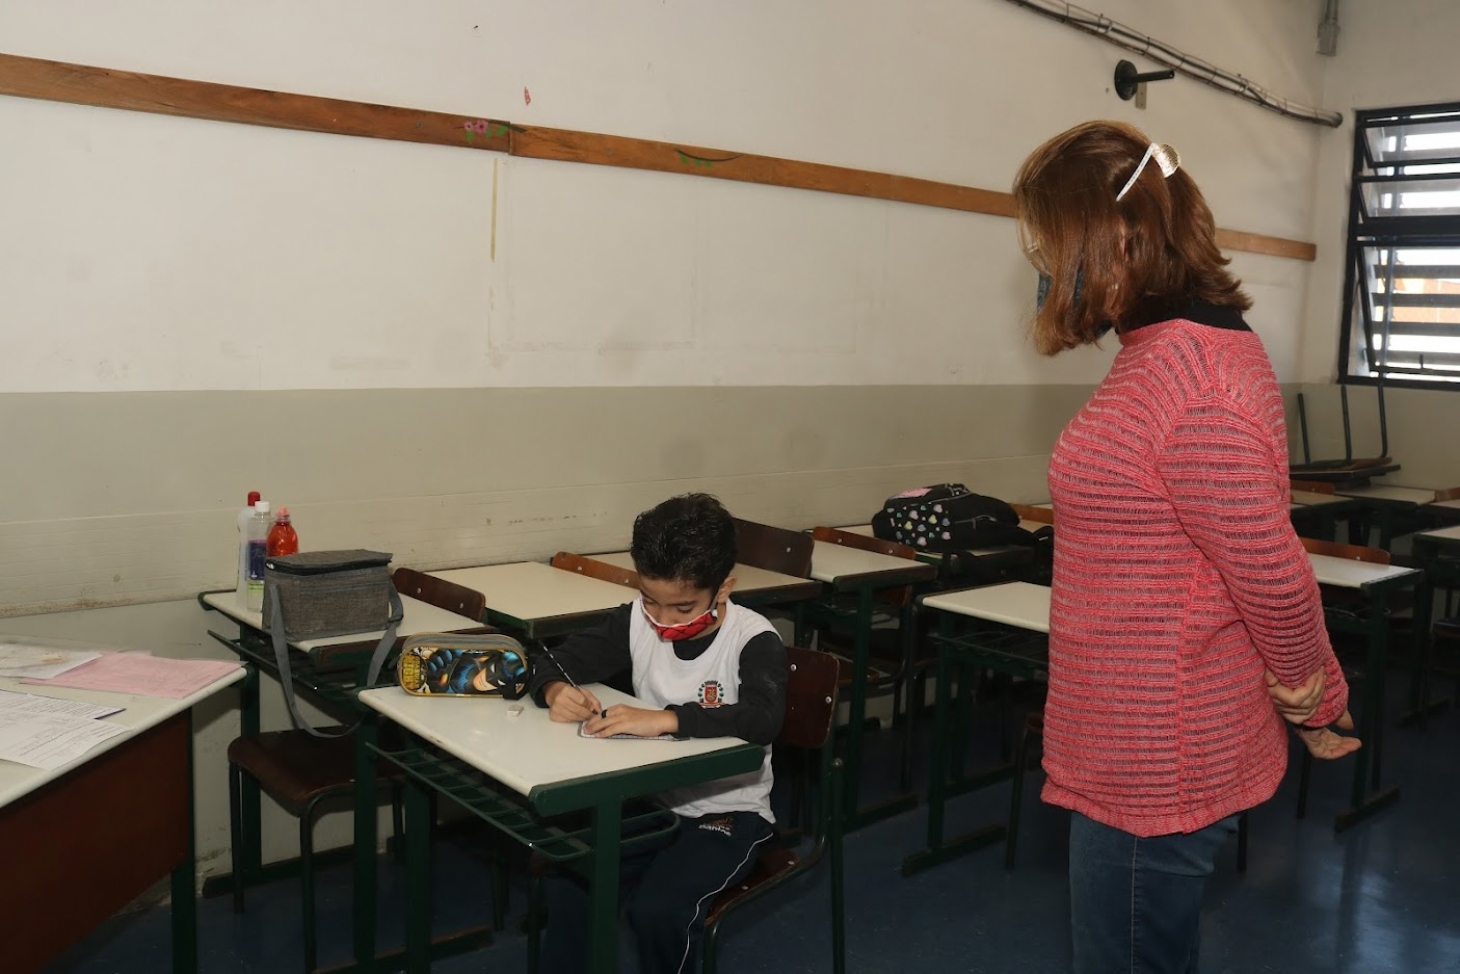 Escolas em Santos reabrem após recesso com foco no presencial de 100chr37 em agosto | Jornal da Orla